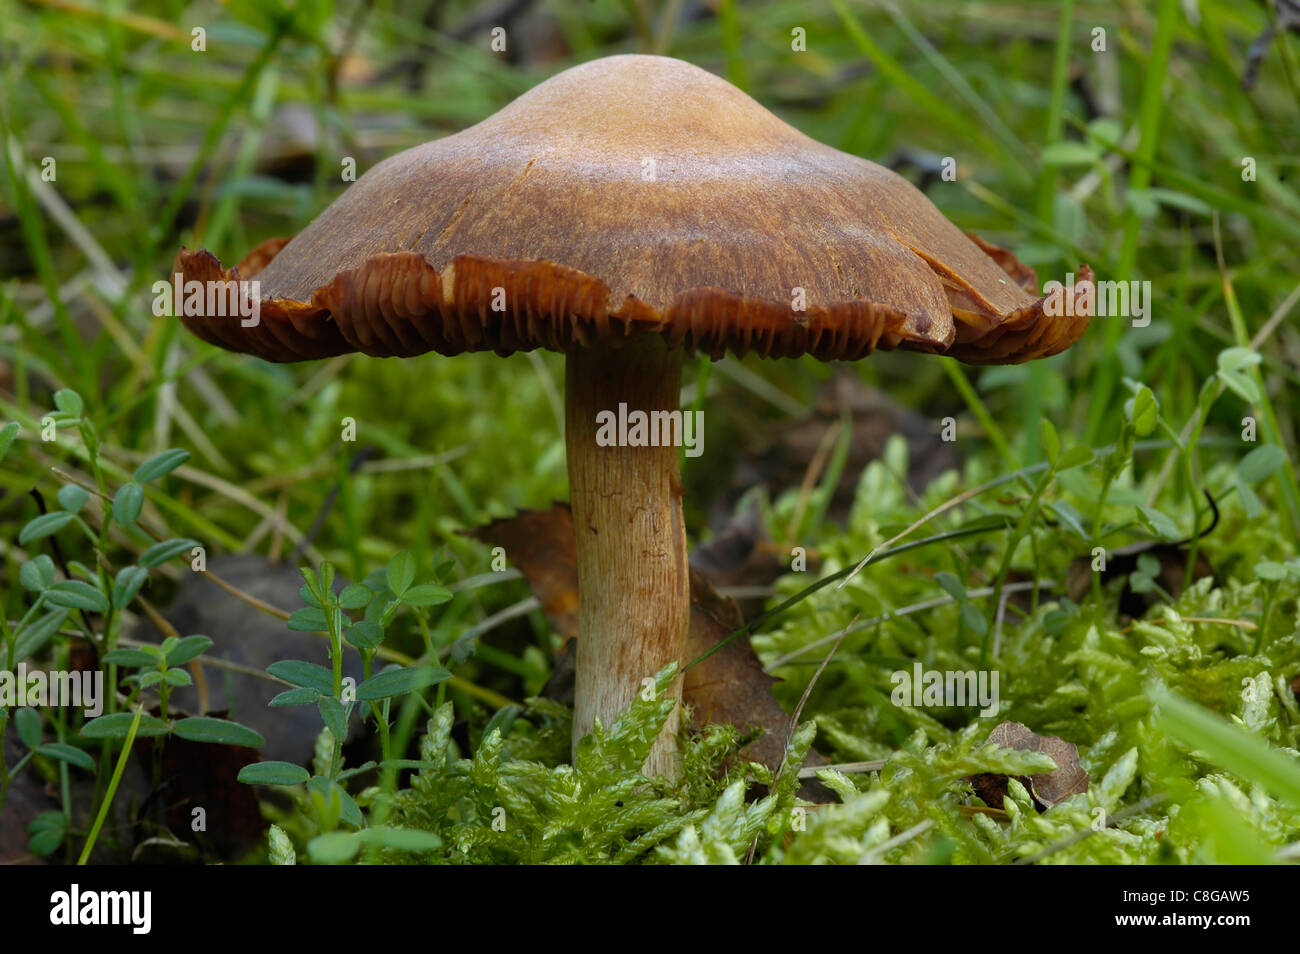 Surprise Web-cap Fungus - Cortinarius semisanguineus Stock Photo